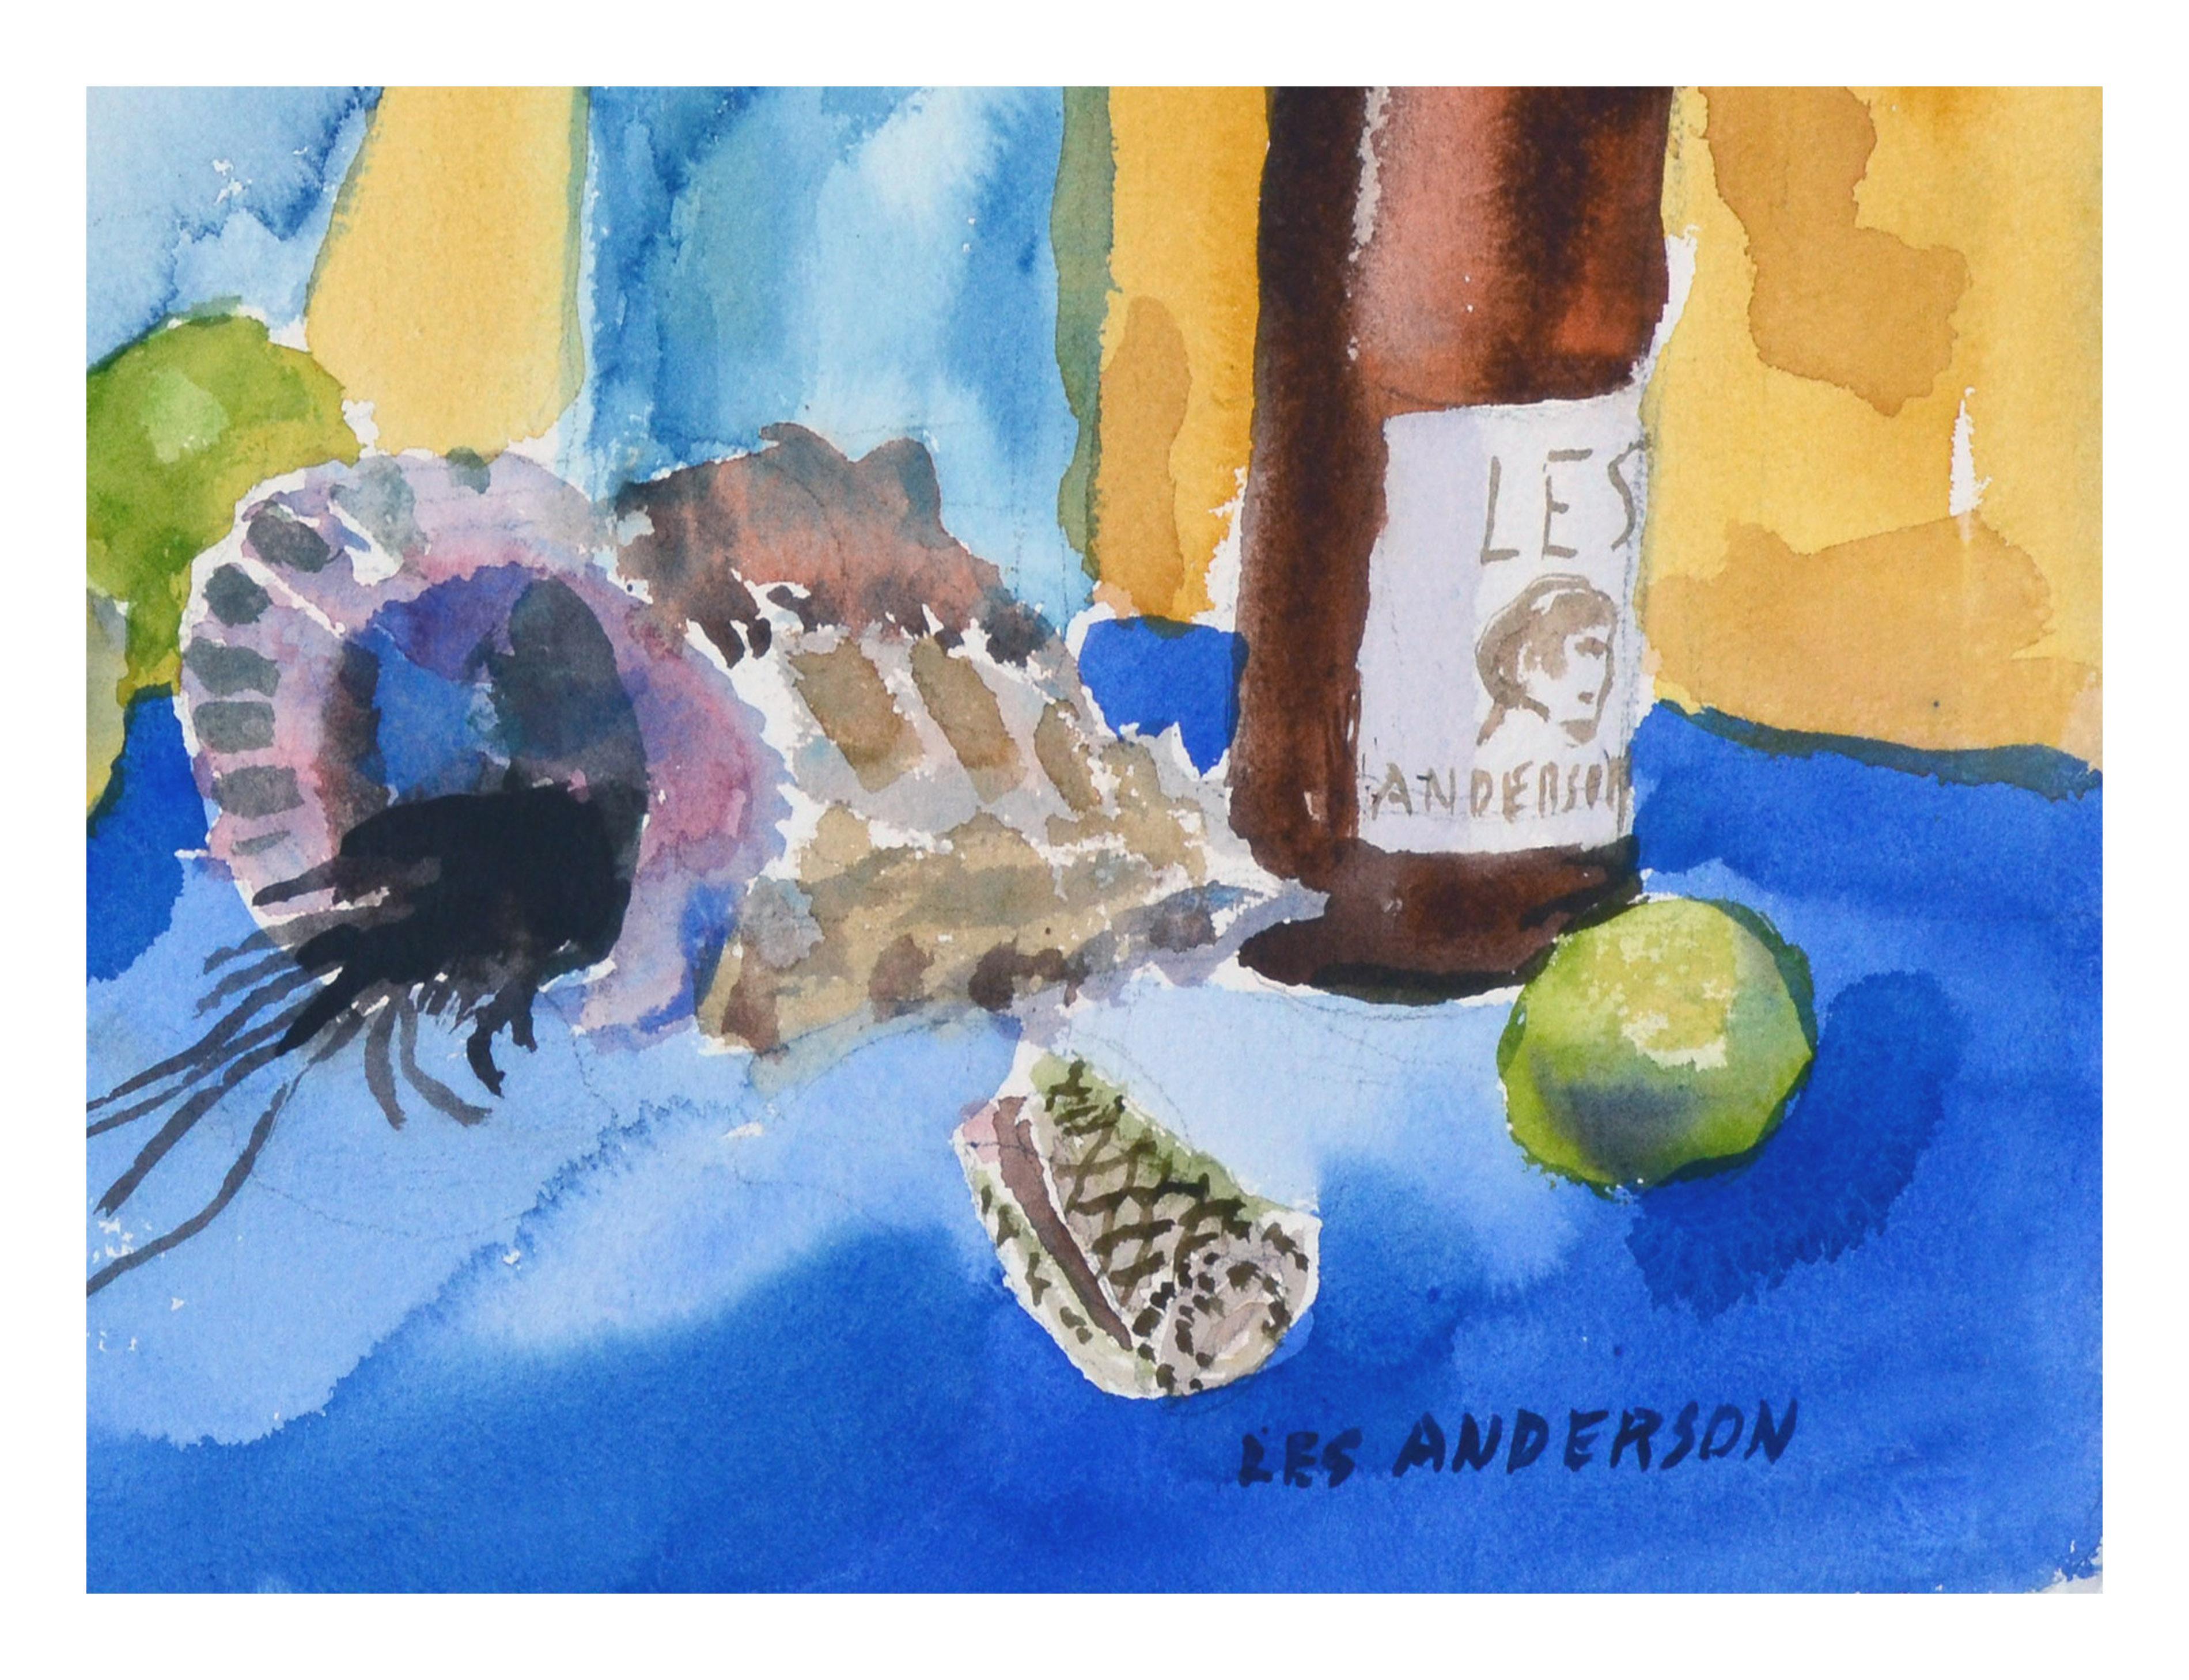 Nature morte fantaisiste composée de divers coquillages, fruits et bouteilles, dont une bouteille de vin avec une étiquette indiquant le nom de l'artiste et un autoportrait grossier, par Les (Leslie Luverne) Anderson (Américain, 1928-2009). De la